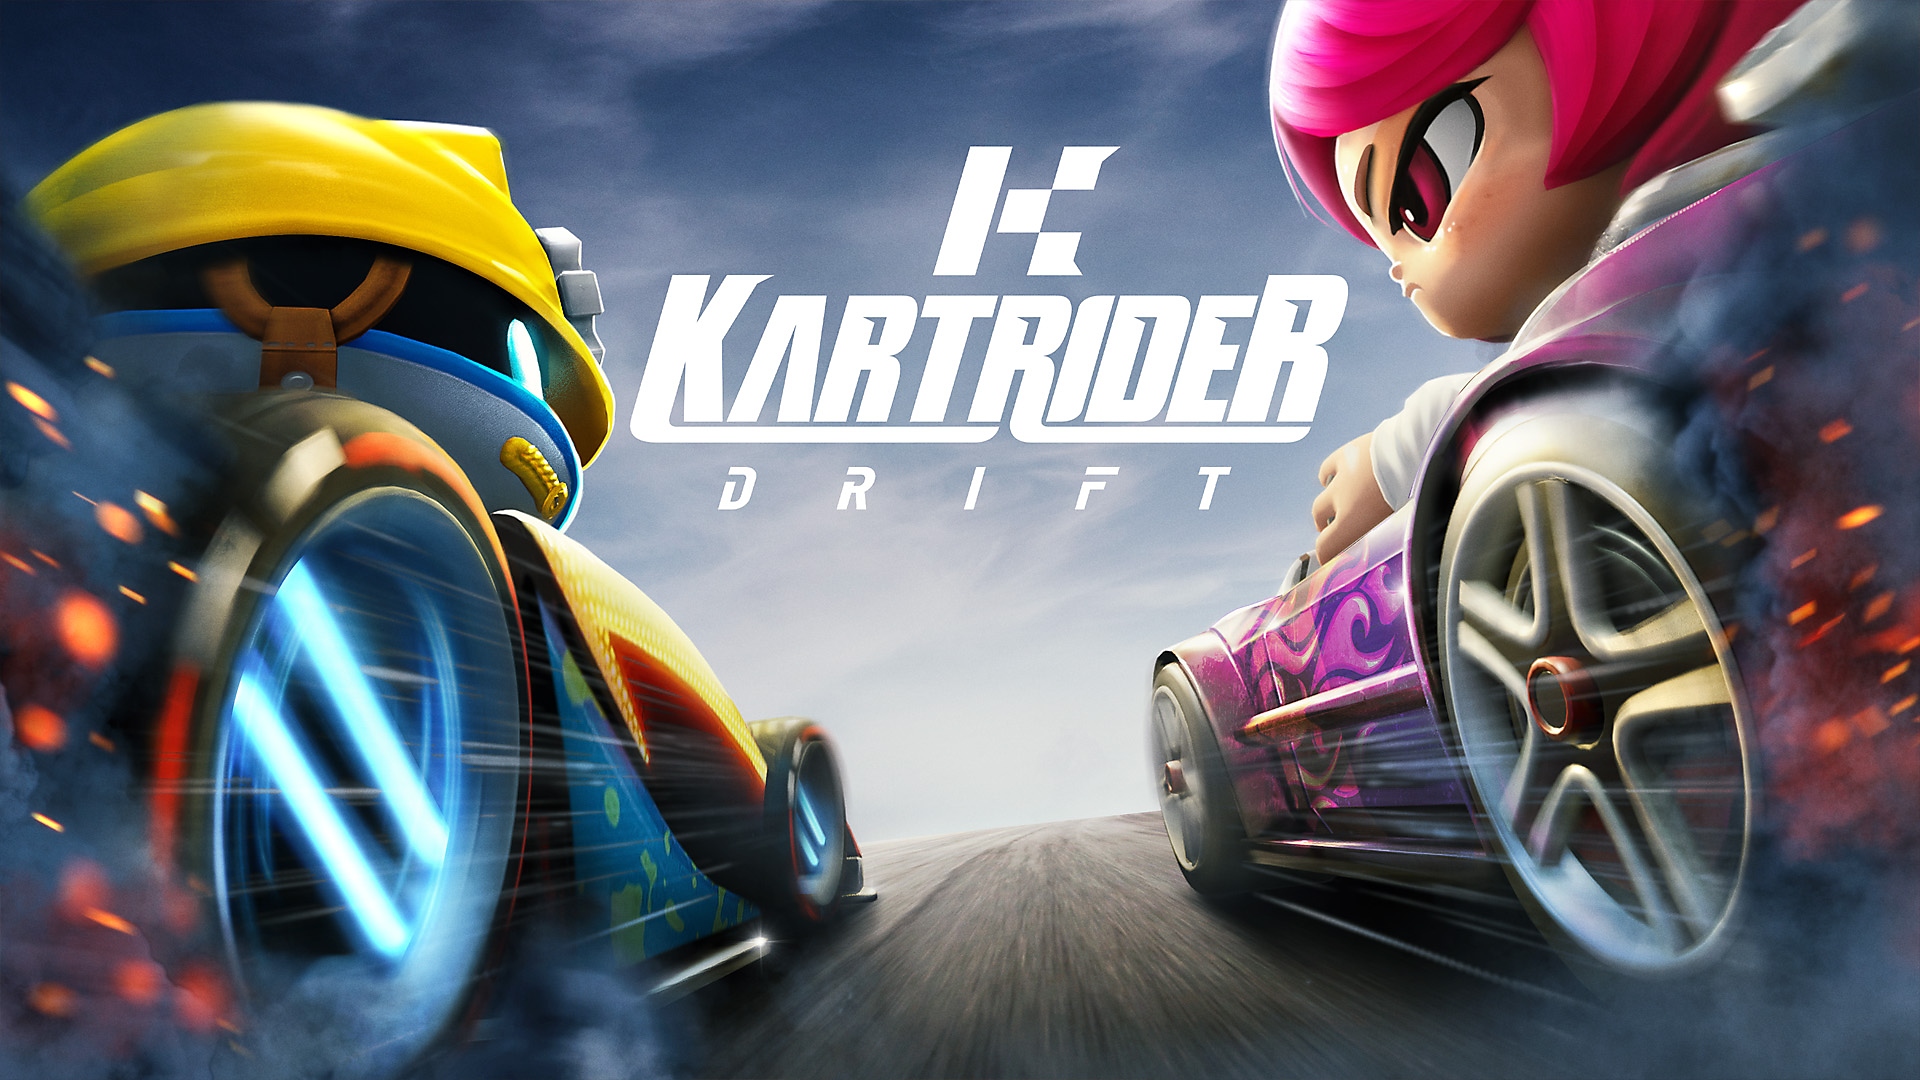 KartRider: Drift - Season 1 Trailer | PS4 Games